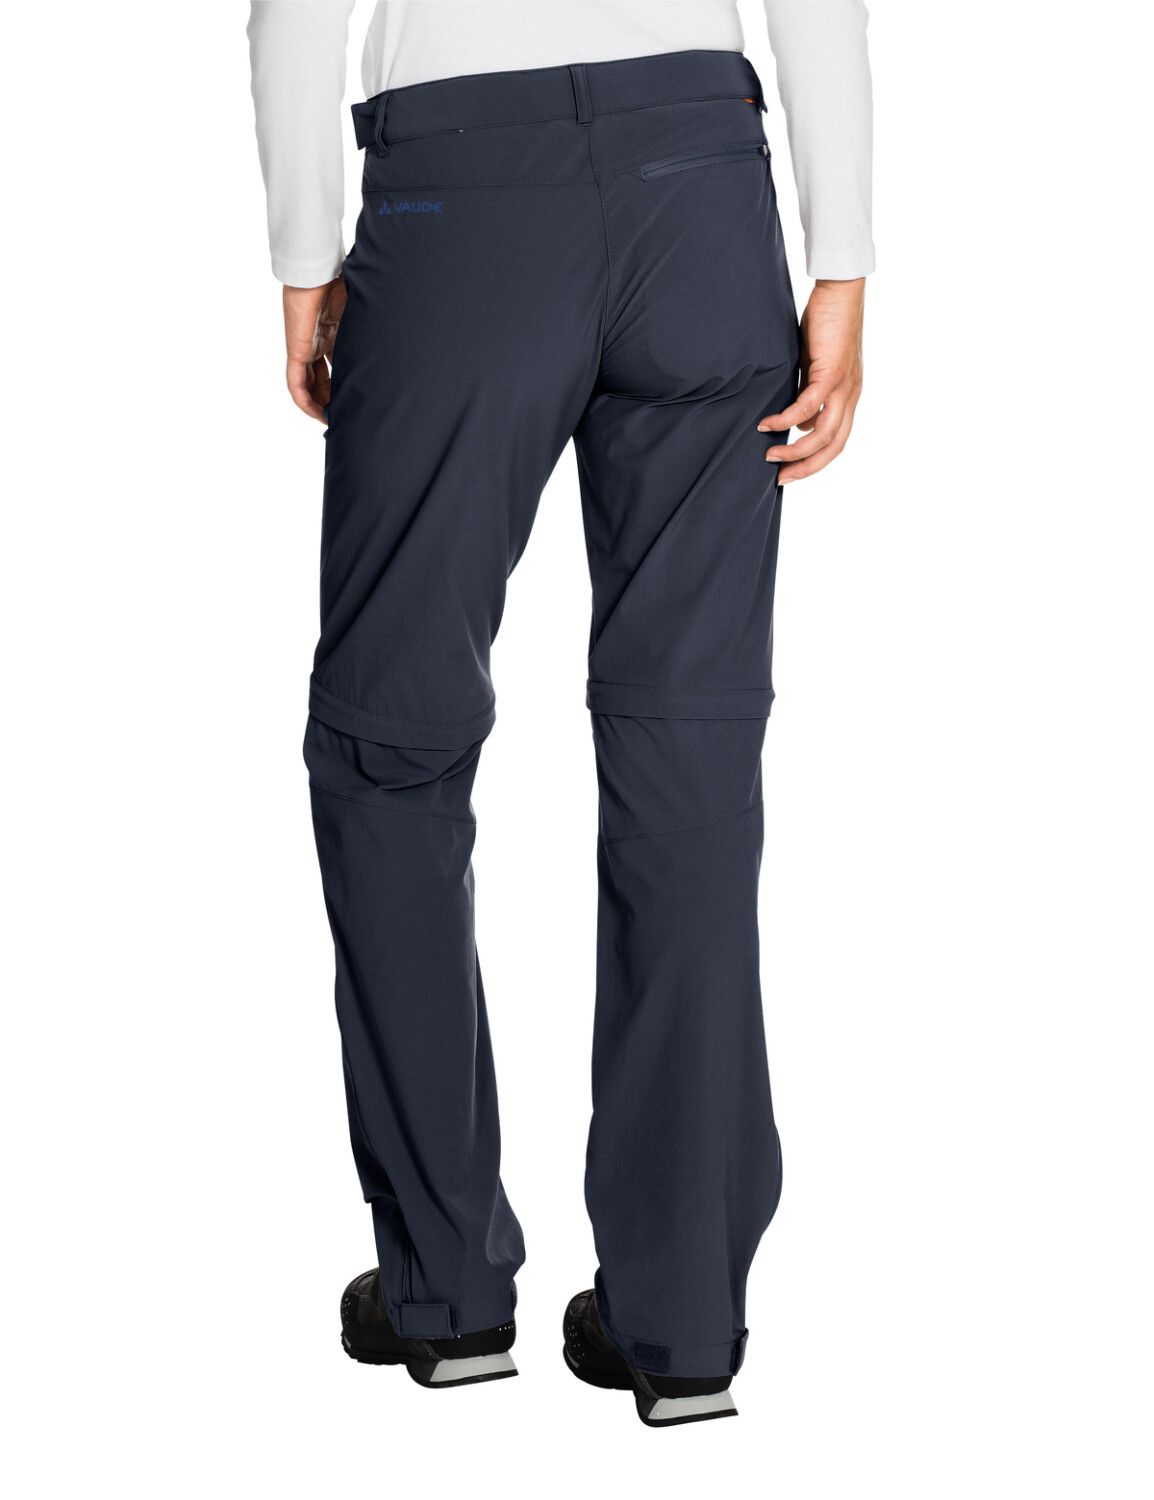 VAUDE Women's Farley Stretch ZO T-Zip Pants (Bild 68)